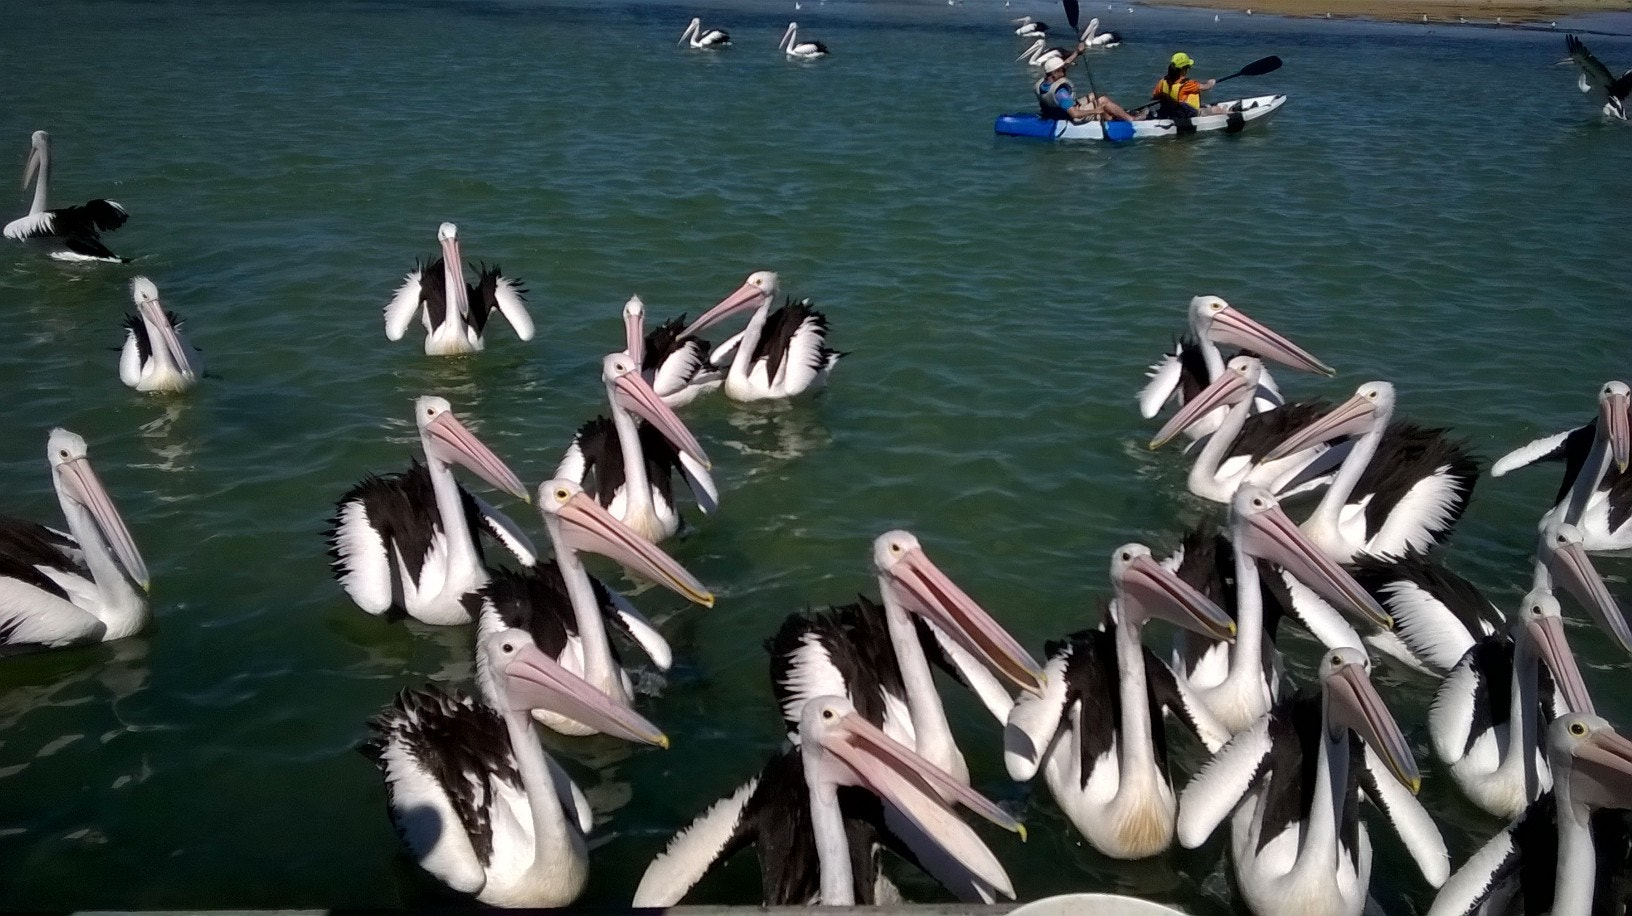 Nokia Lumia 635 sample photo. So many beautiful pelicans!! photography